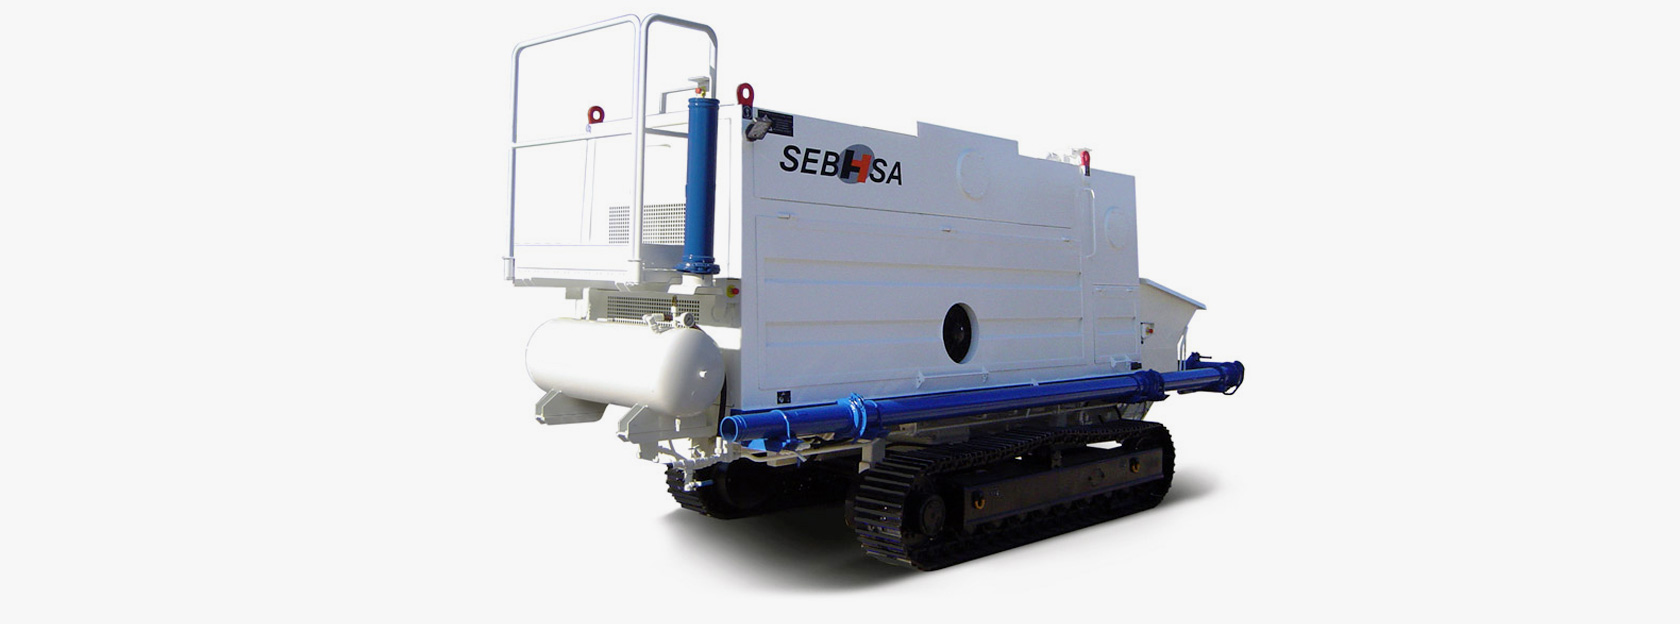 La bomba estacionaria sobre cadenas SEBHSA BD-3117.OR está configurada para lograr la máxima productividad a partir de su motor altamente eficiente y de bajas emisiones.